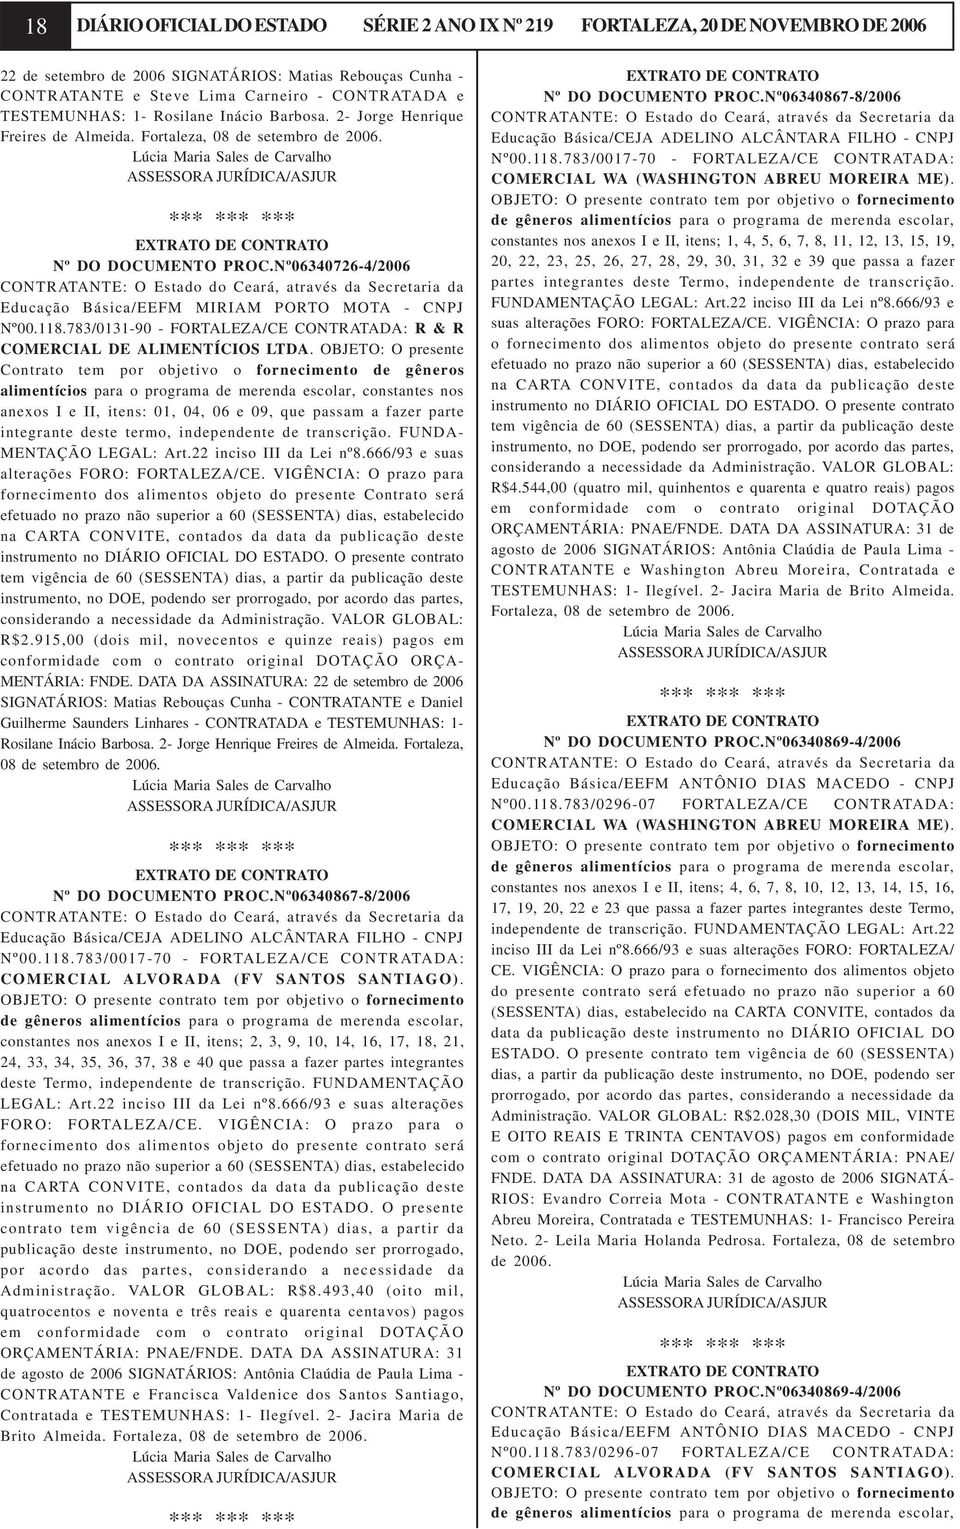 Nº06340726-4/2006 CONTRATANTE: O Estado do Ceará, através da Secretaria da Educação Básica/EEFM MIRIAM PORTO MOTA - CNPJ Nº00.118.